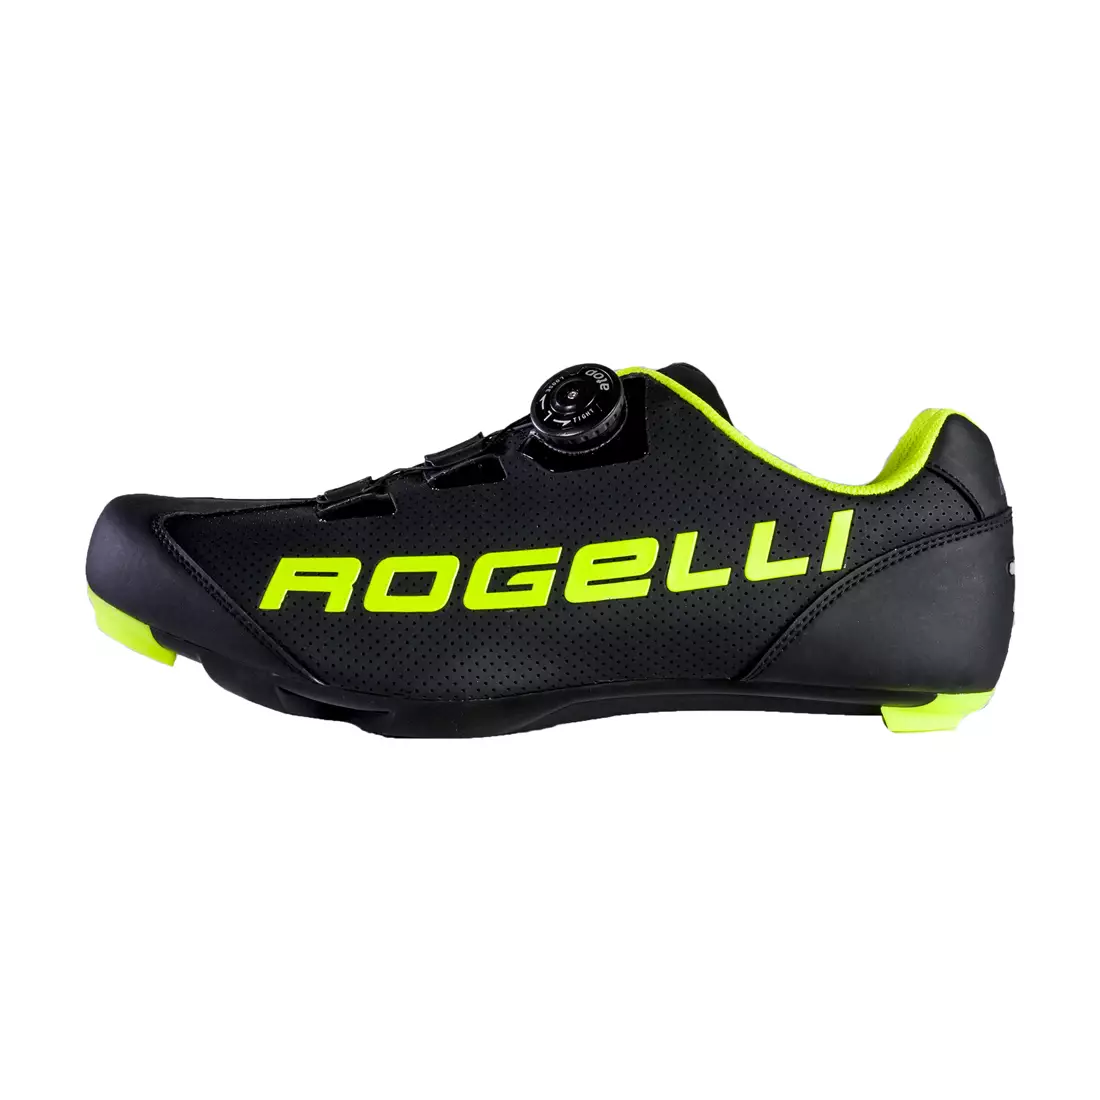 ROGELLI AB-410 Rennradschuhe, Schwarz-Fluorgelb